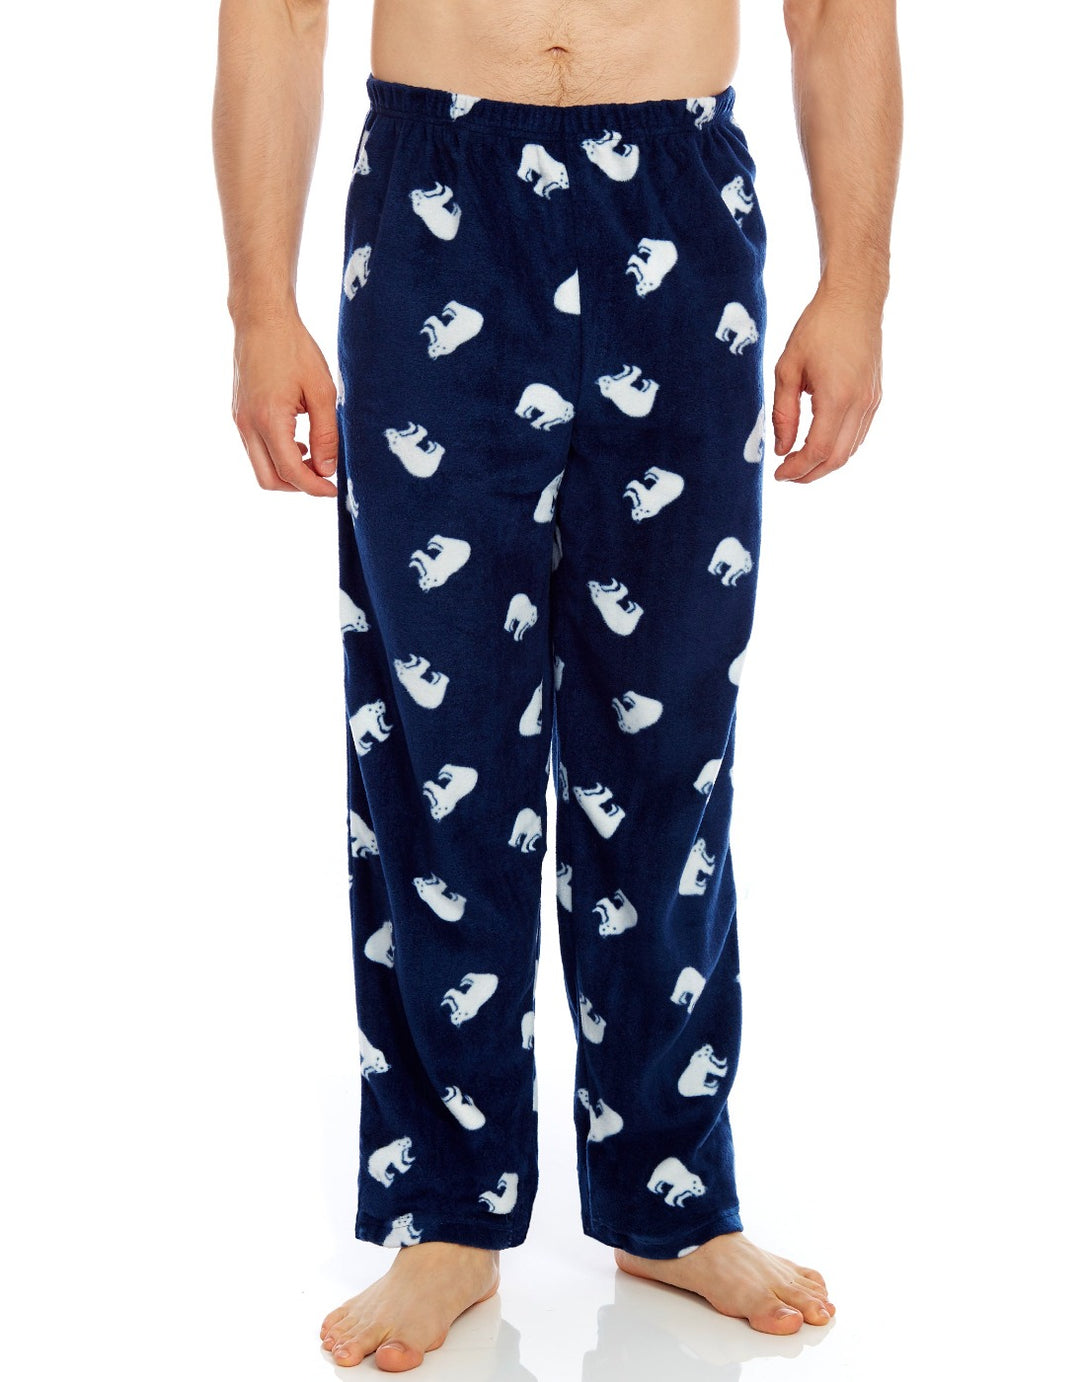 fuzzy pajama pants from walmart｜TikTok Search